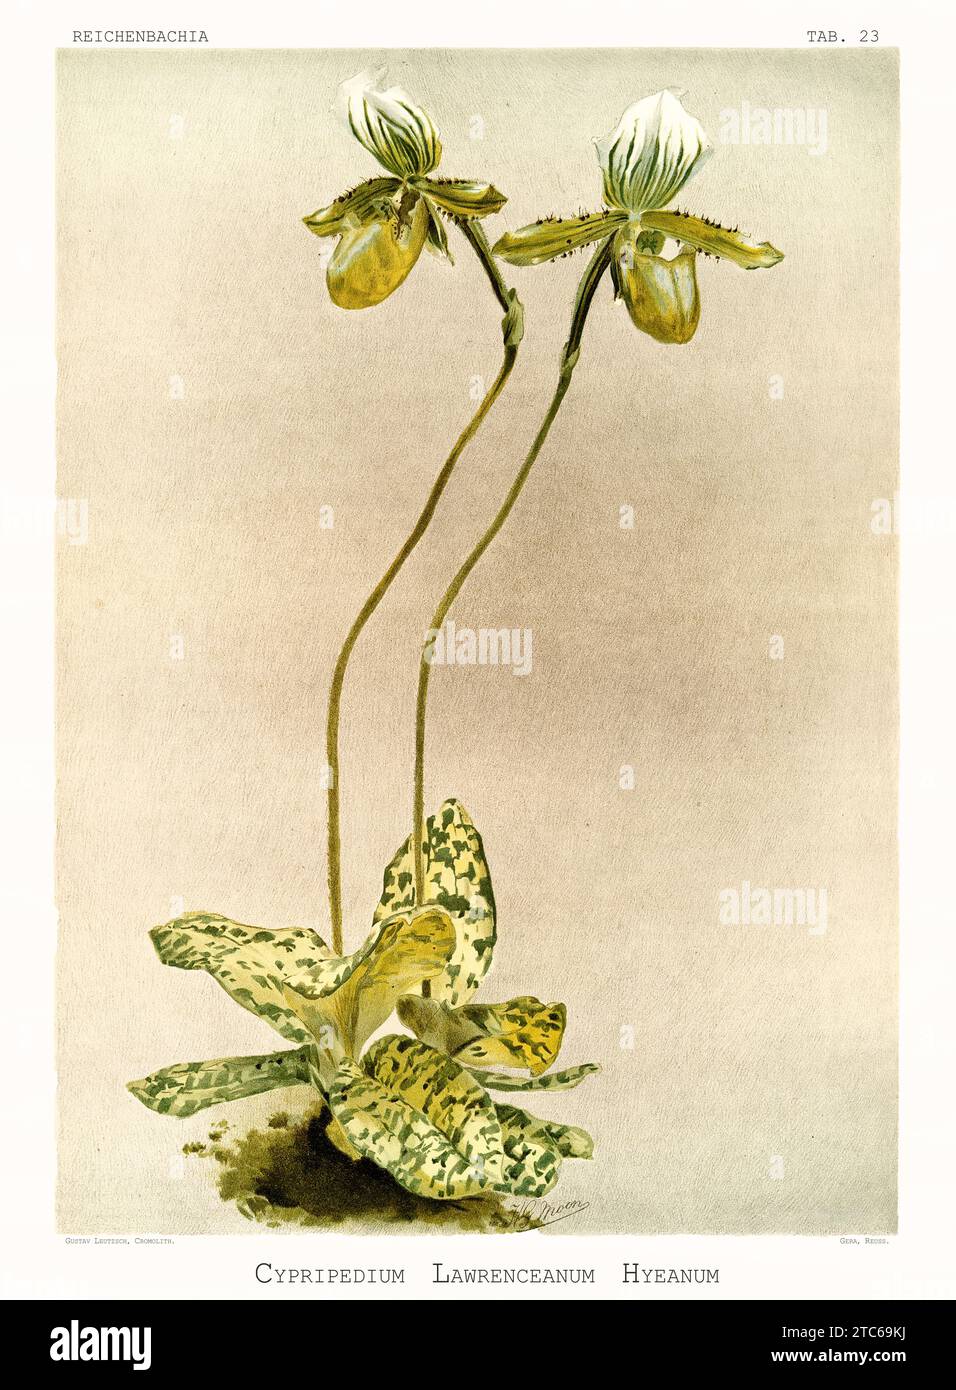 Illustration ancienne du Paphiopedilum de Lawrence (Paphiopedilum lawrenceanum). Reichenbachia, de F. Sander. St. Albans, Royaume-Uni, 1888 - 1894 Banque D'Images